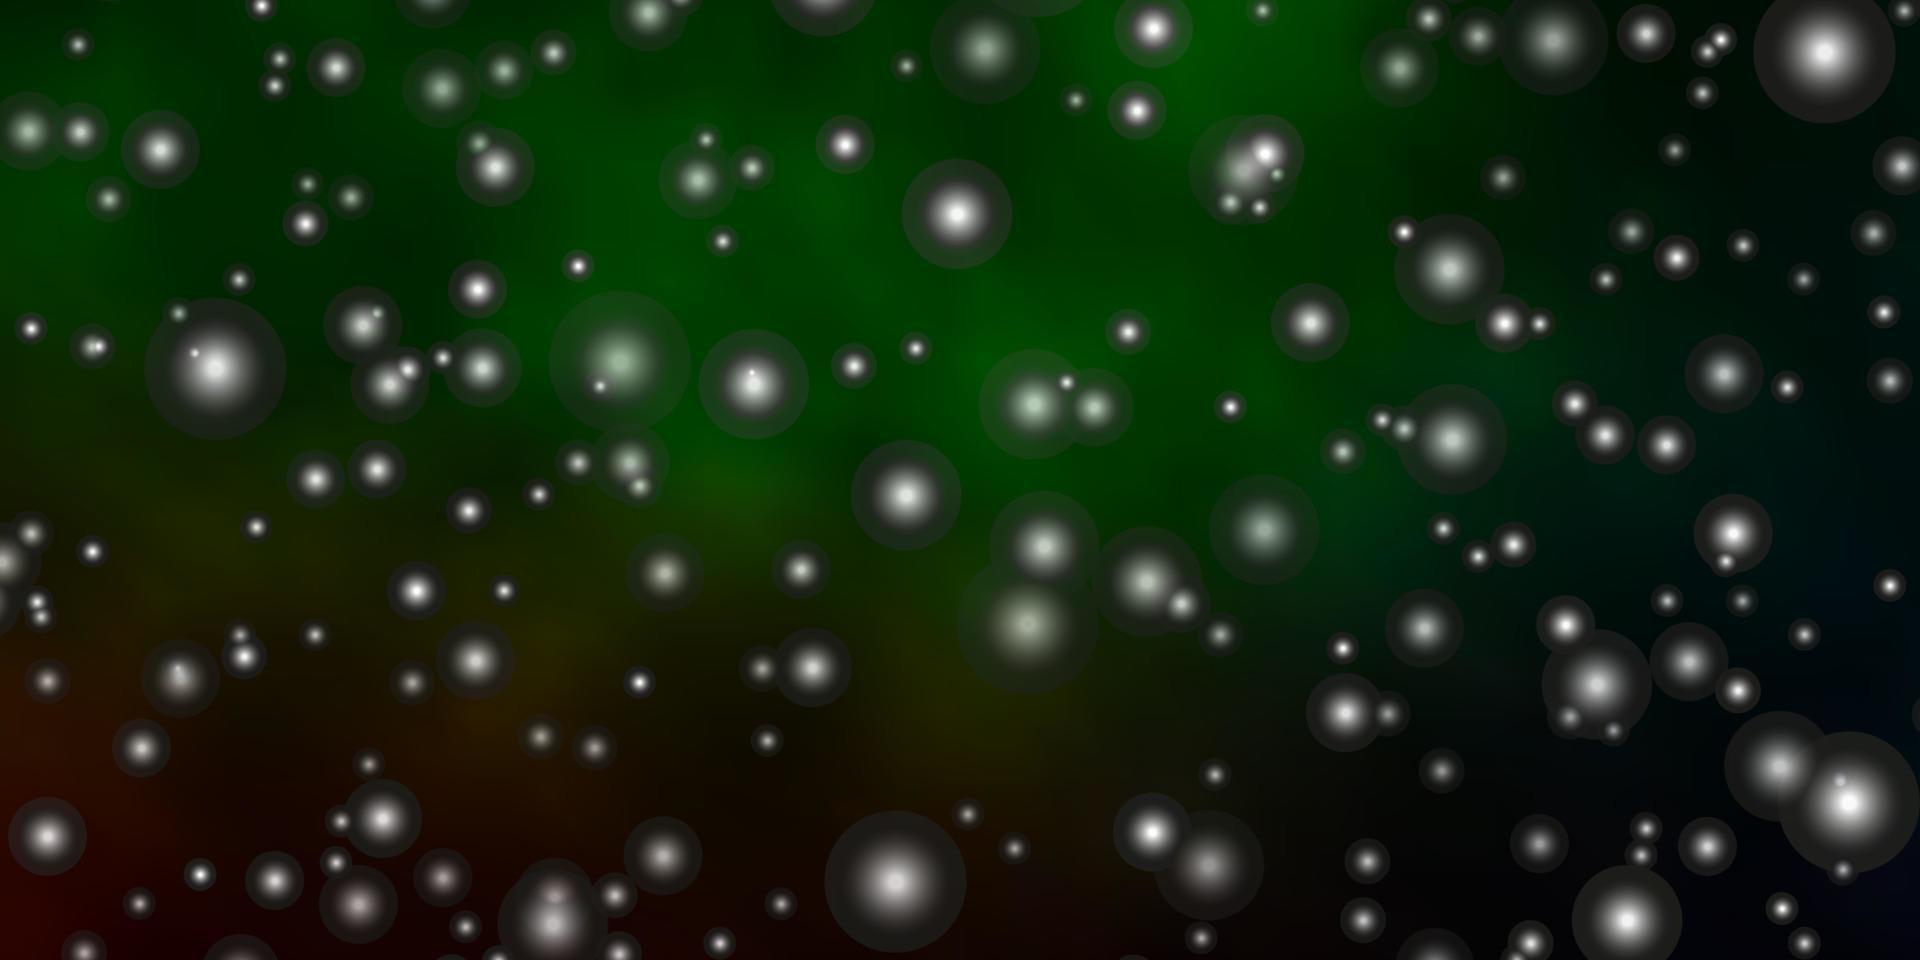 modèle vectoriel vert foncé avec des étoiles au néon.